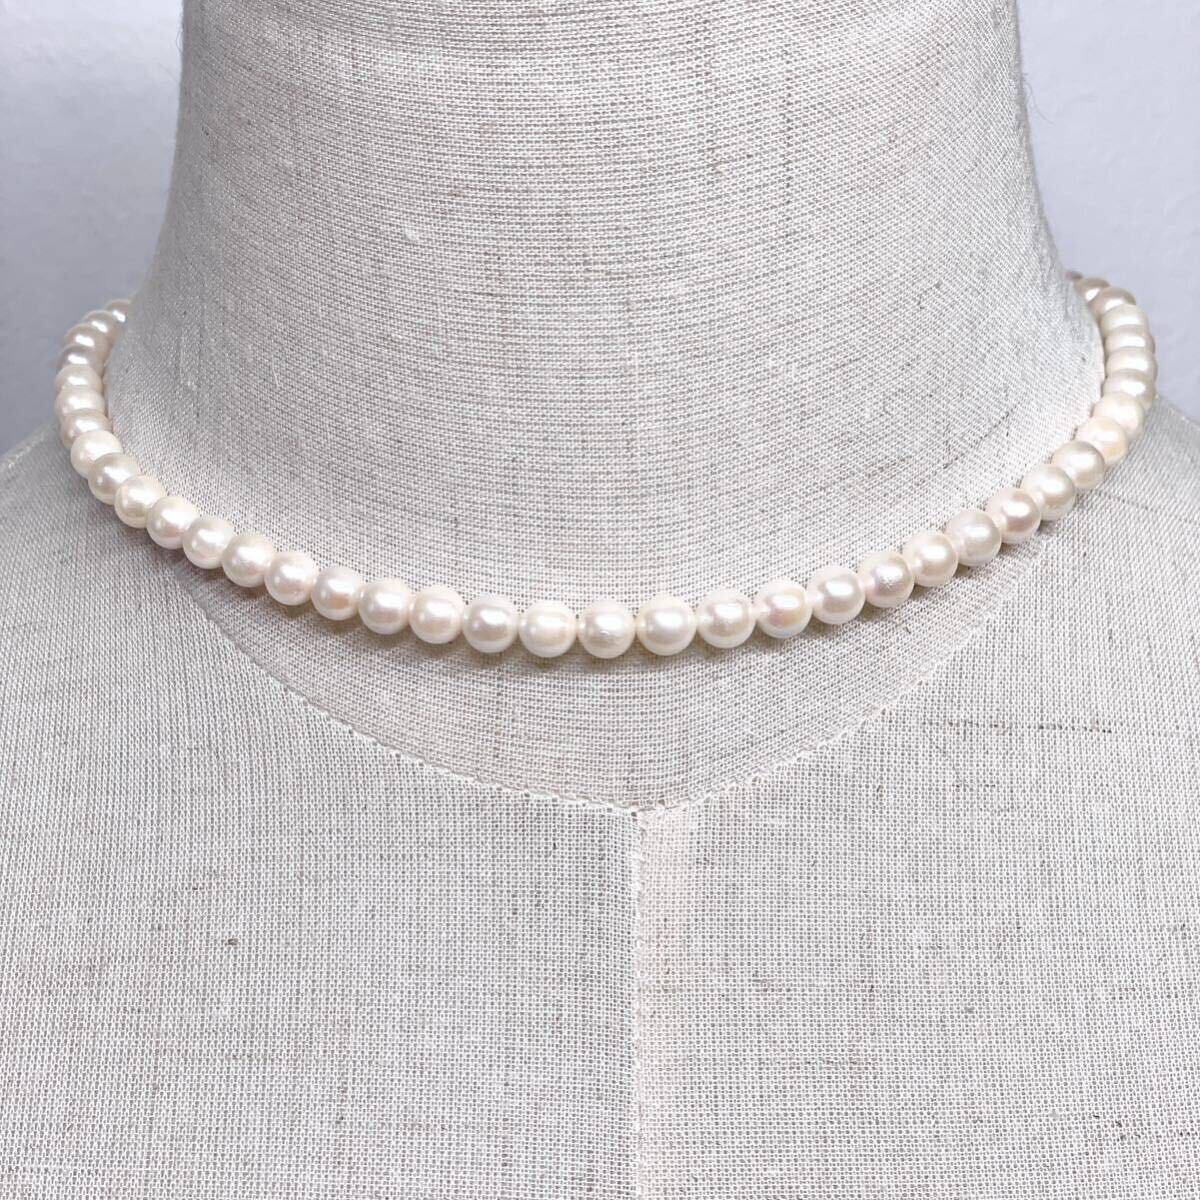 テリ強 美品 アコヤ真珠 ネックレス 6.0-6.5mm アコヤパール ラウンド pearl necklace jewelry silver_画像3